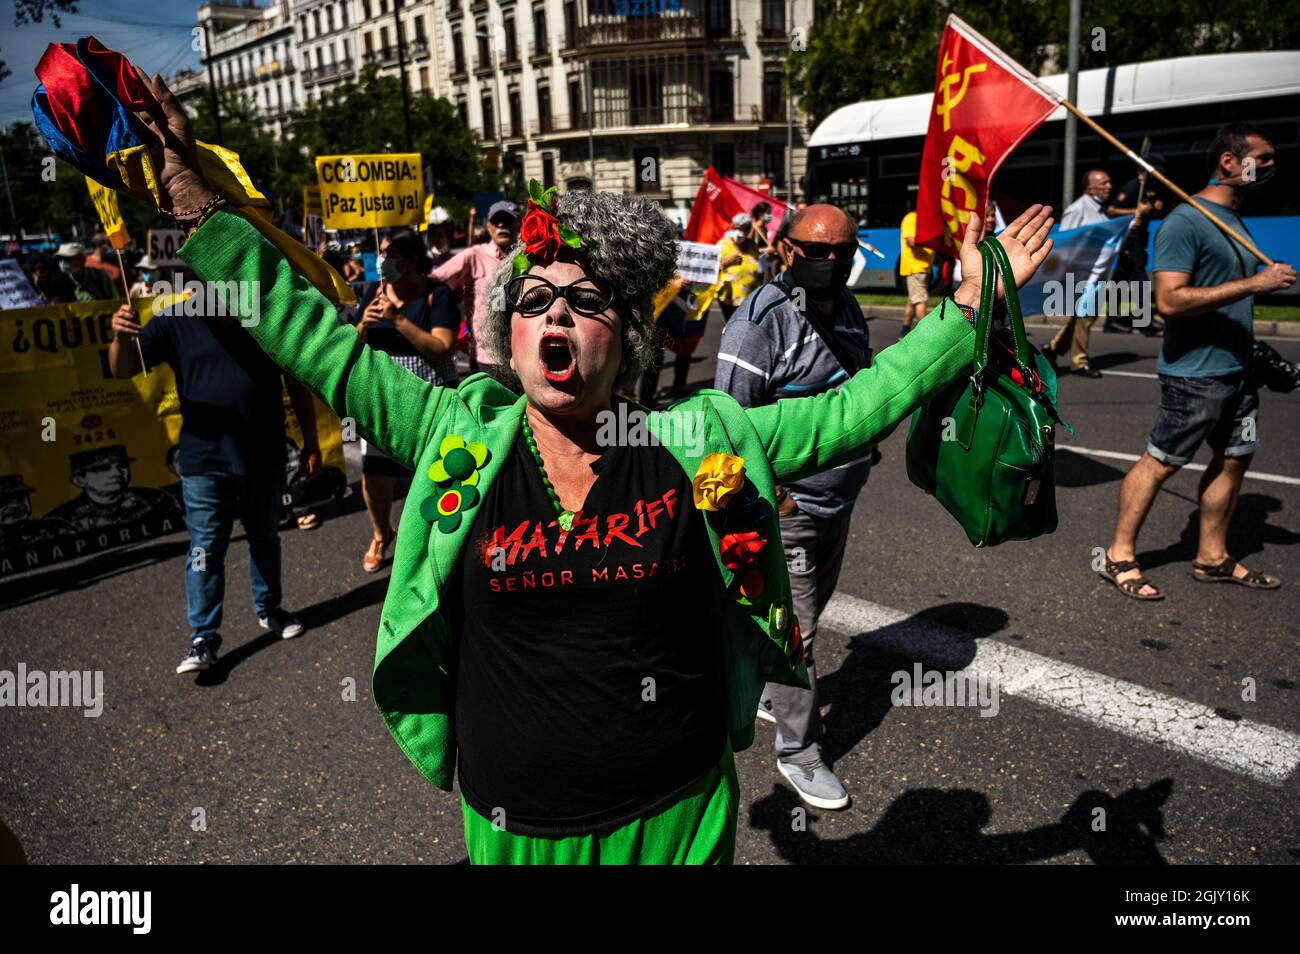 Madrid, Spanien. September 2021. Ein Protestler, der während einer Demonstration gegen den Besuch des kolumbianischen Präsidenten Ivan Duque auf der Madrider Buchmesse 2021 Parolen rief. Quelle: Marcos del Mazo/Alamy Live News Stockfoto